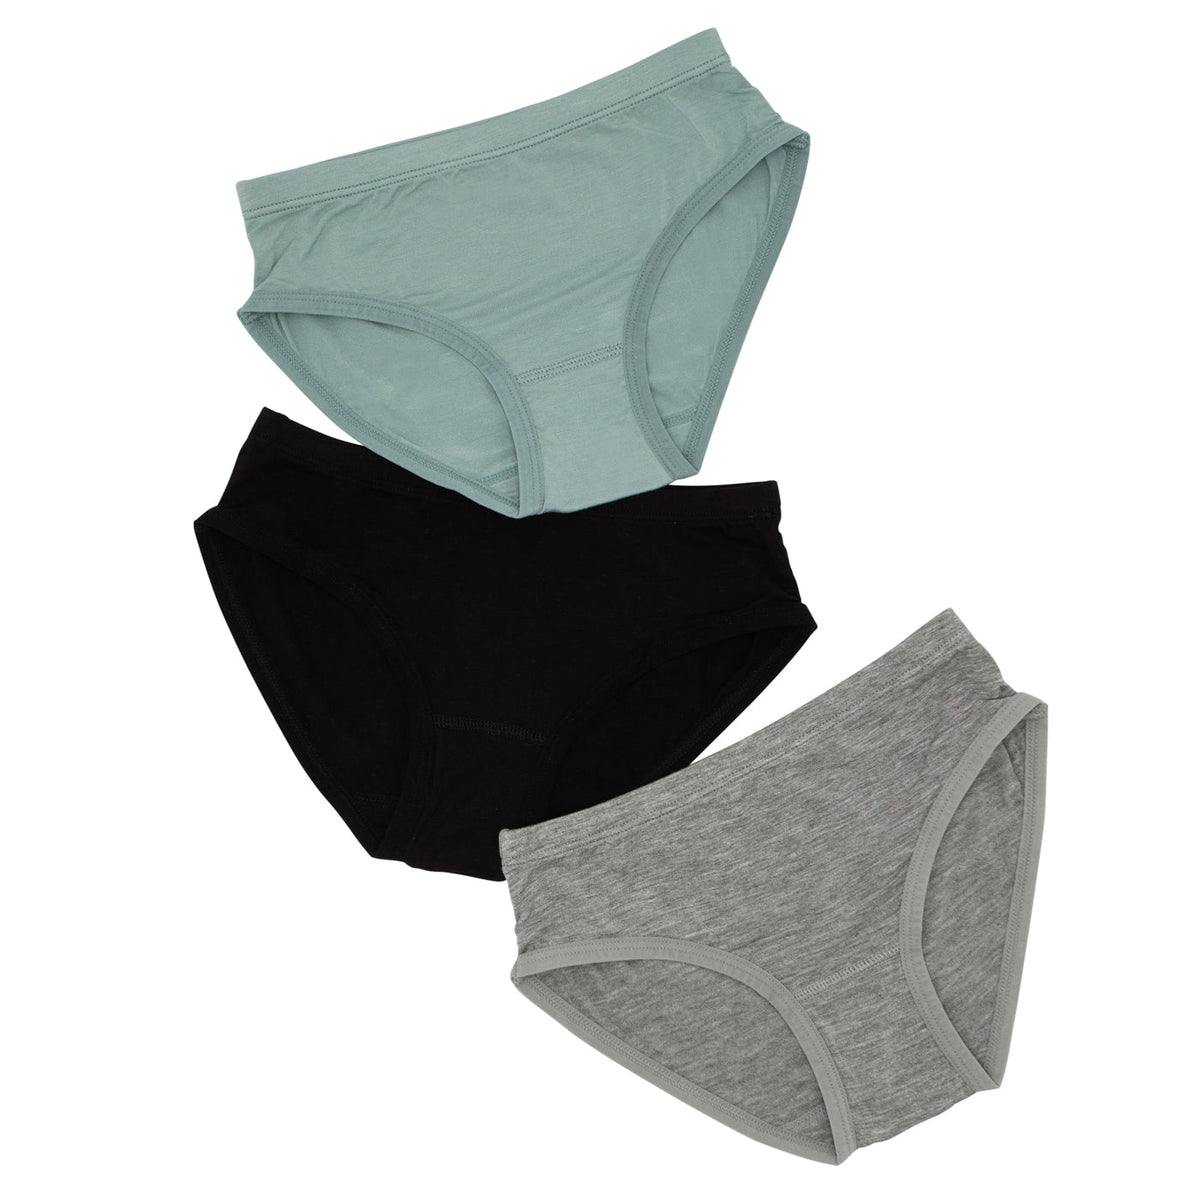 Cotton Underwear for Women  Q for Quinn – Q for Quinn™